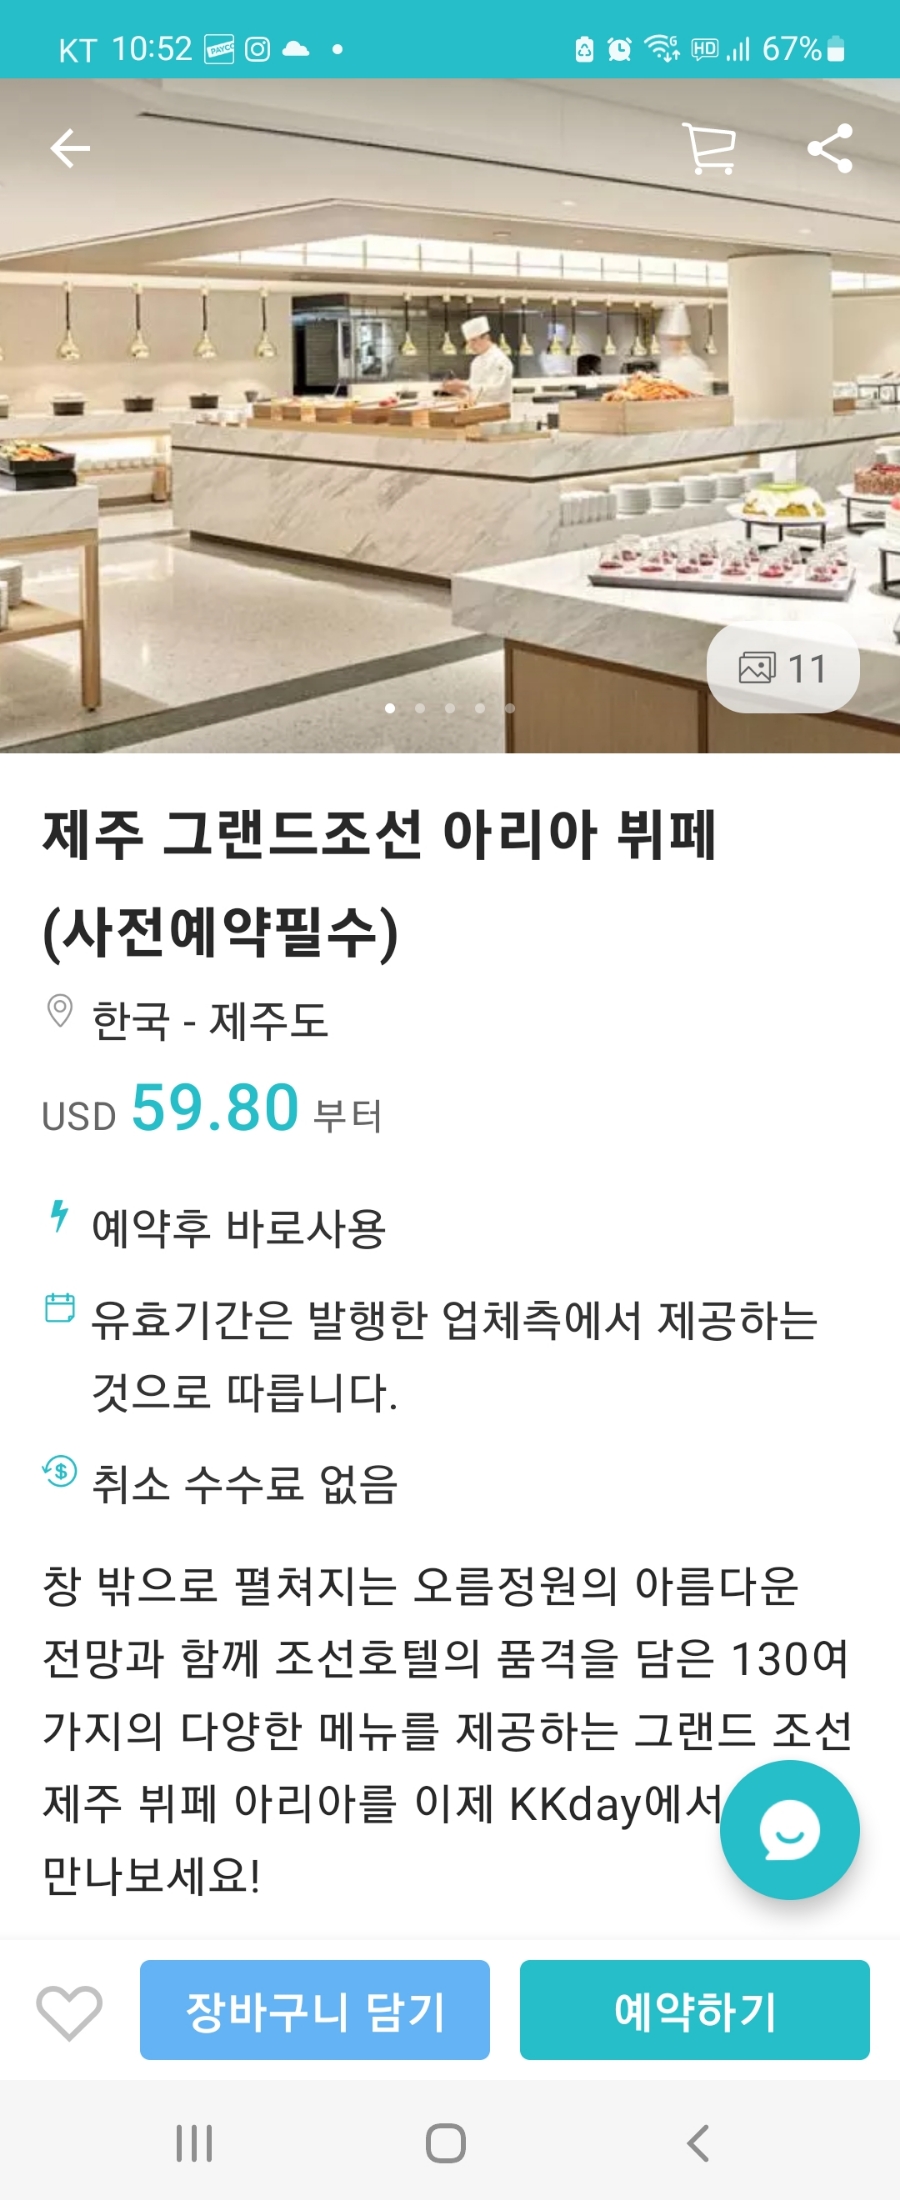 호텔 뷔페 그랜드조선 제주 아리아 런치뷔페 후기( 5% 할인쿠폰 팁)